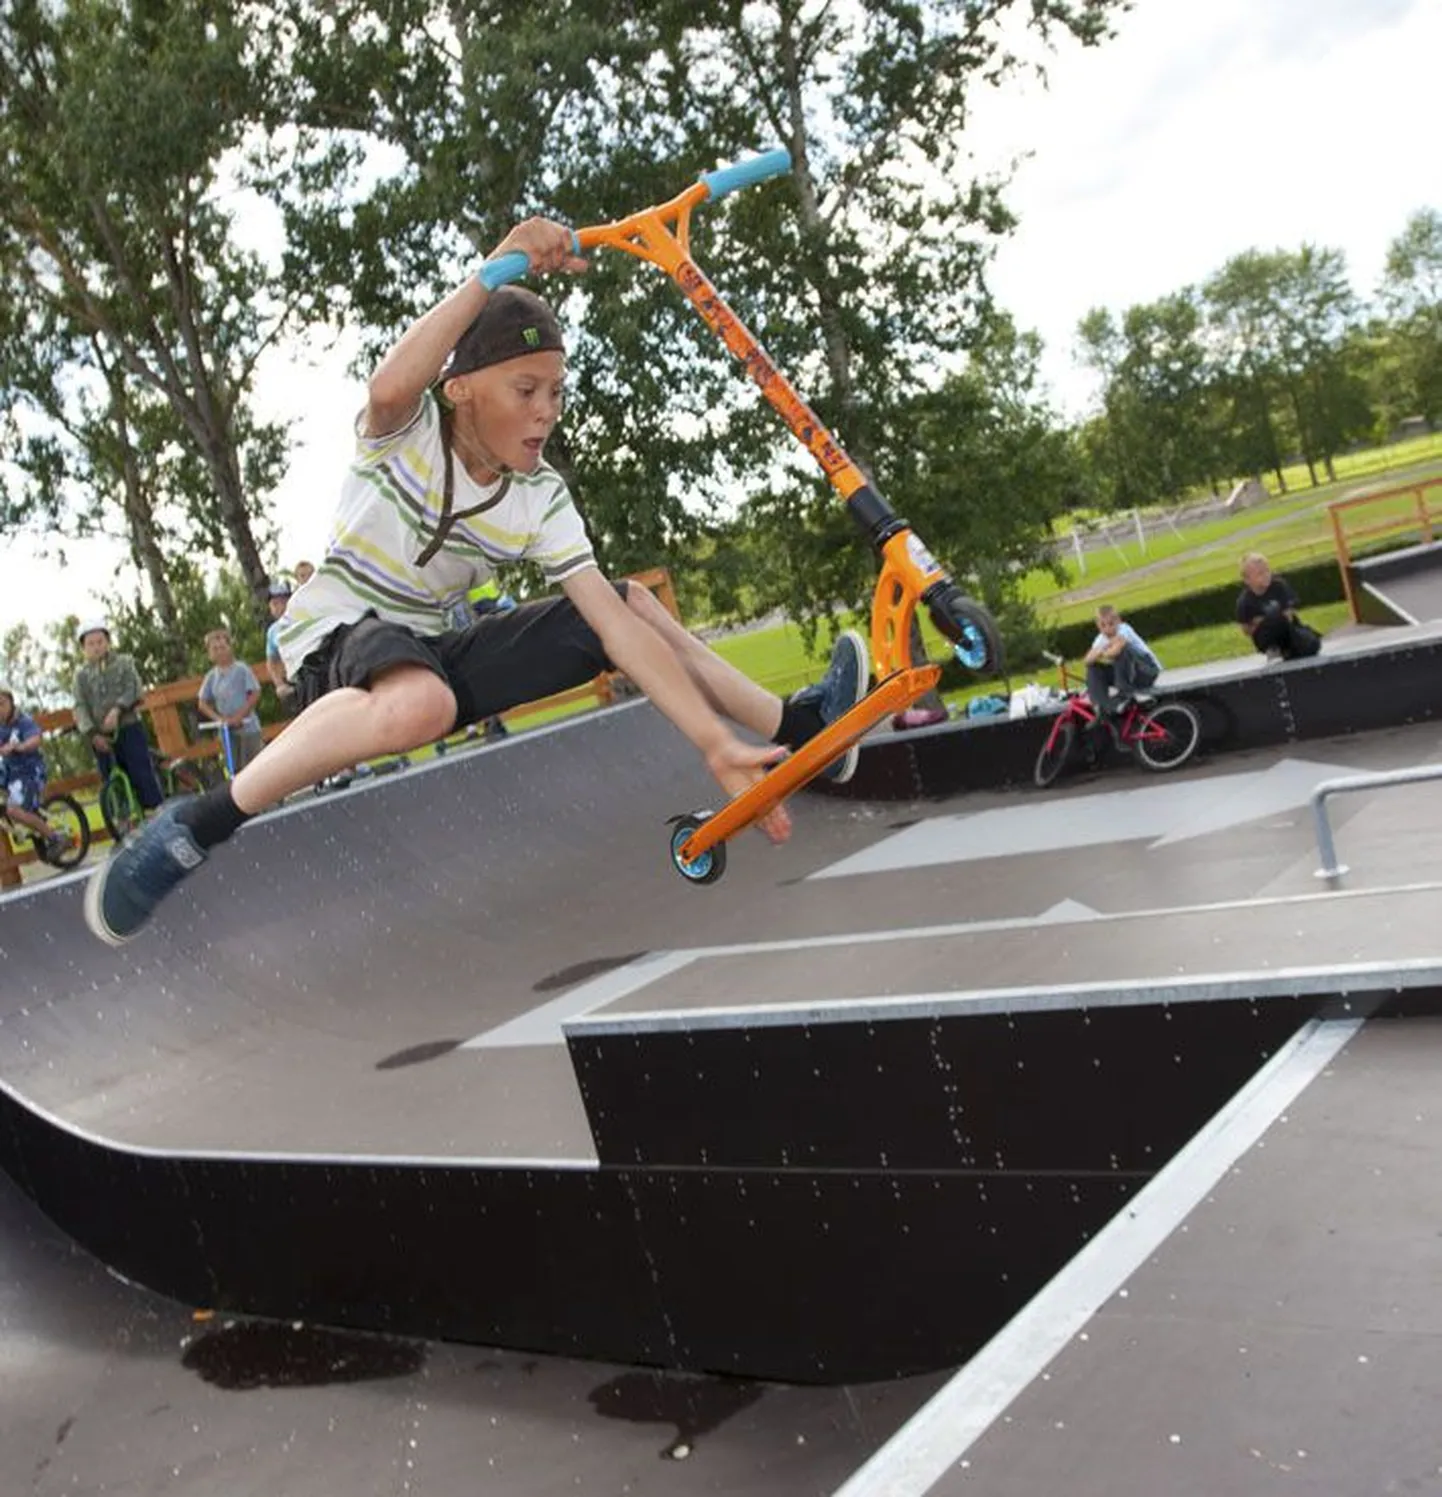 13aastane Aleks Roopa on üks paljudest Kunda noortest, kes uue skate-pargi võimalusi usinalt ära kasutavad.